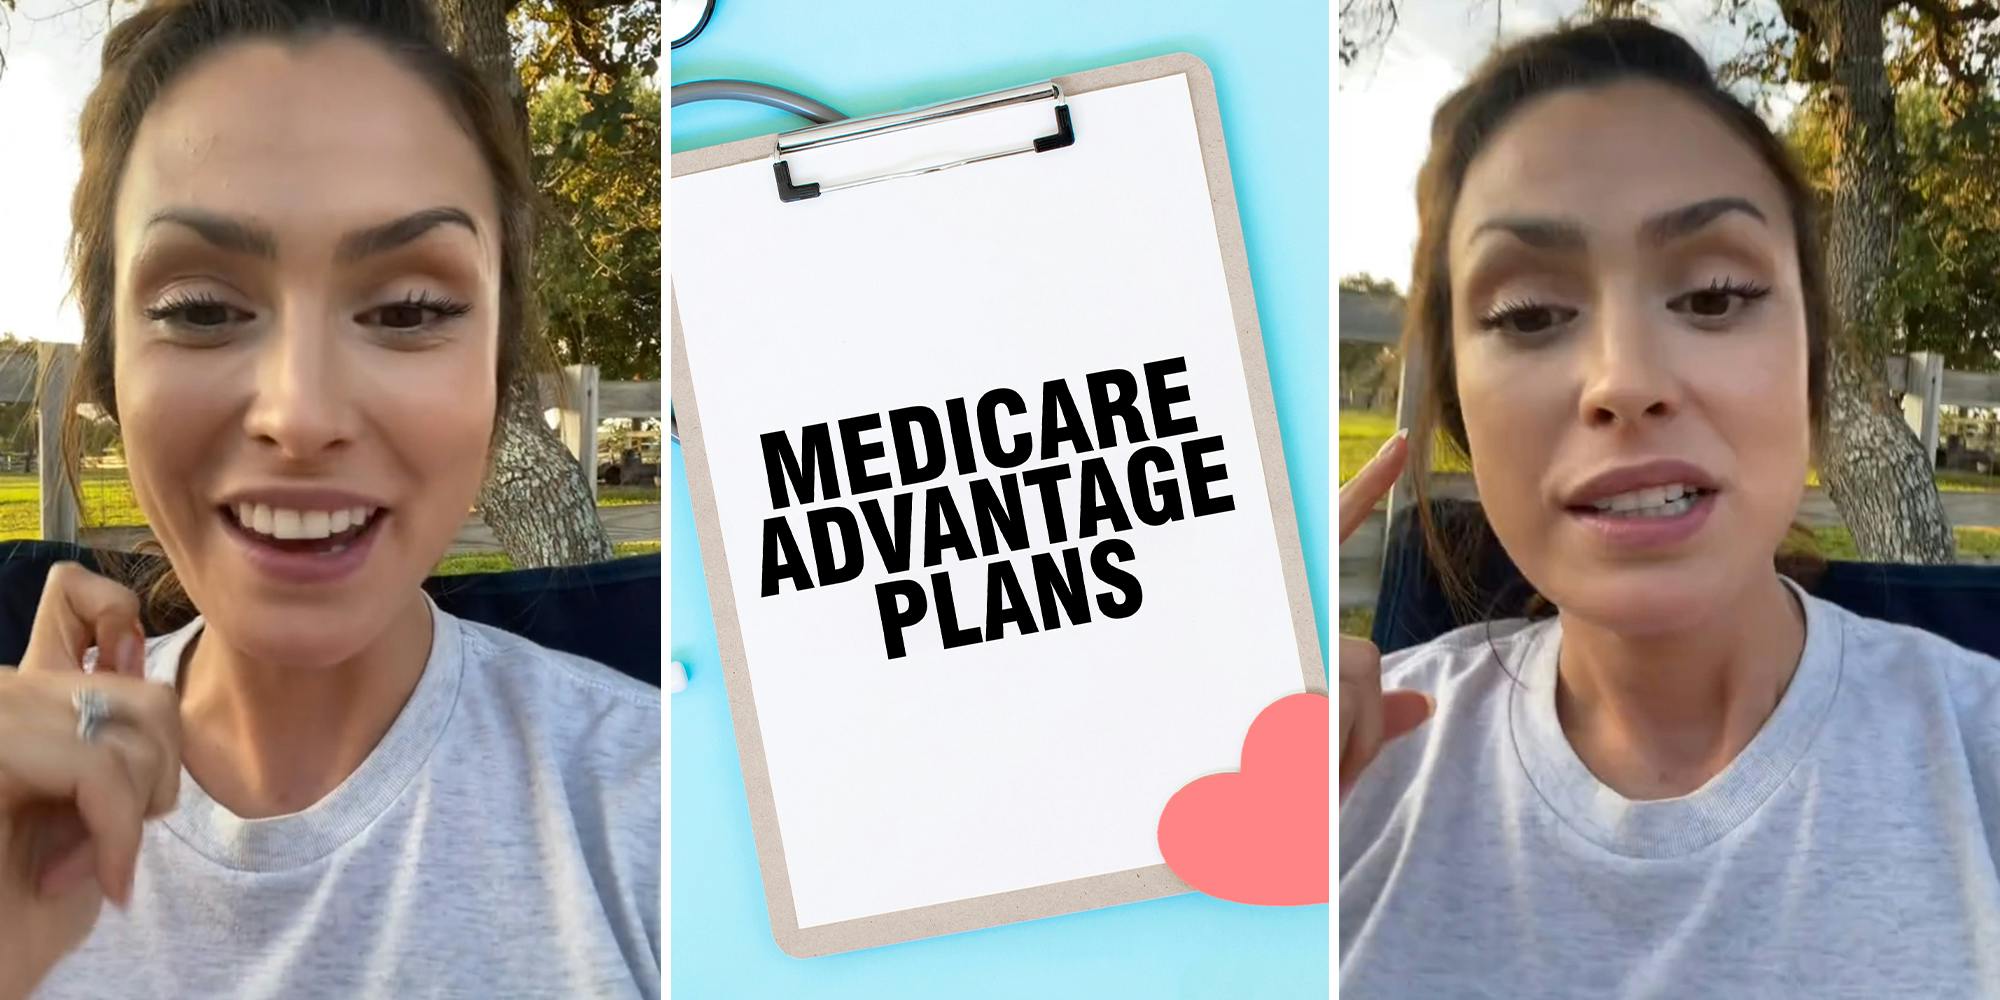 Una enfermera advierte contra los planes Medicare Advantage.  Y he aquí por qué